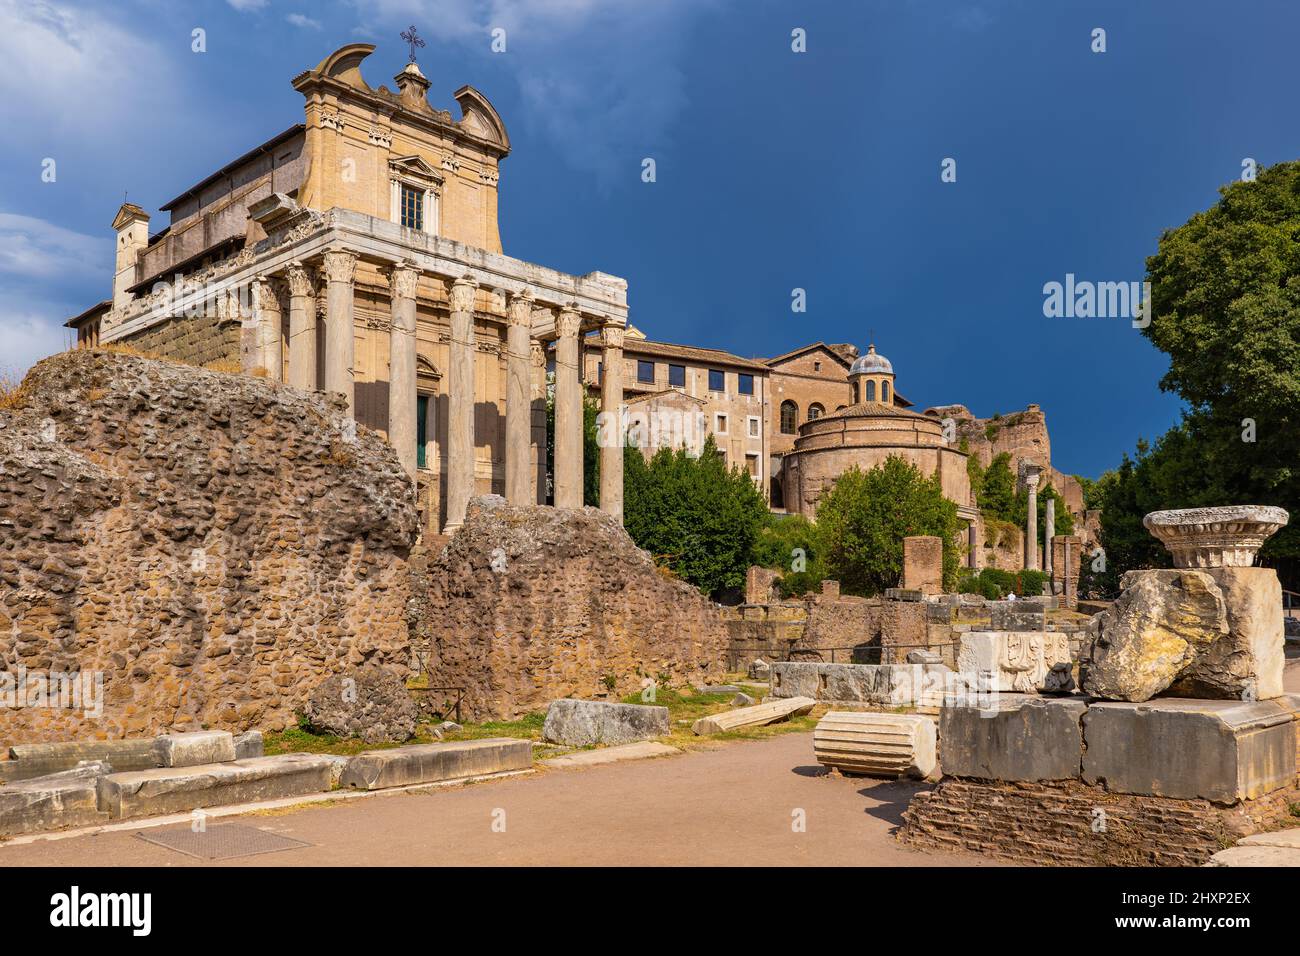 Antico Foro Romano nella città di Roma in Italia. Tempio di Antonino e Faustina e Chiesa di San Lorenzo a Miranda sulla sinistra. Foto Stock